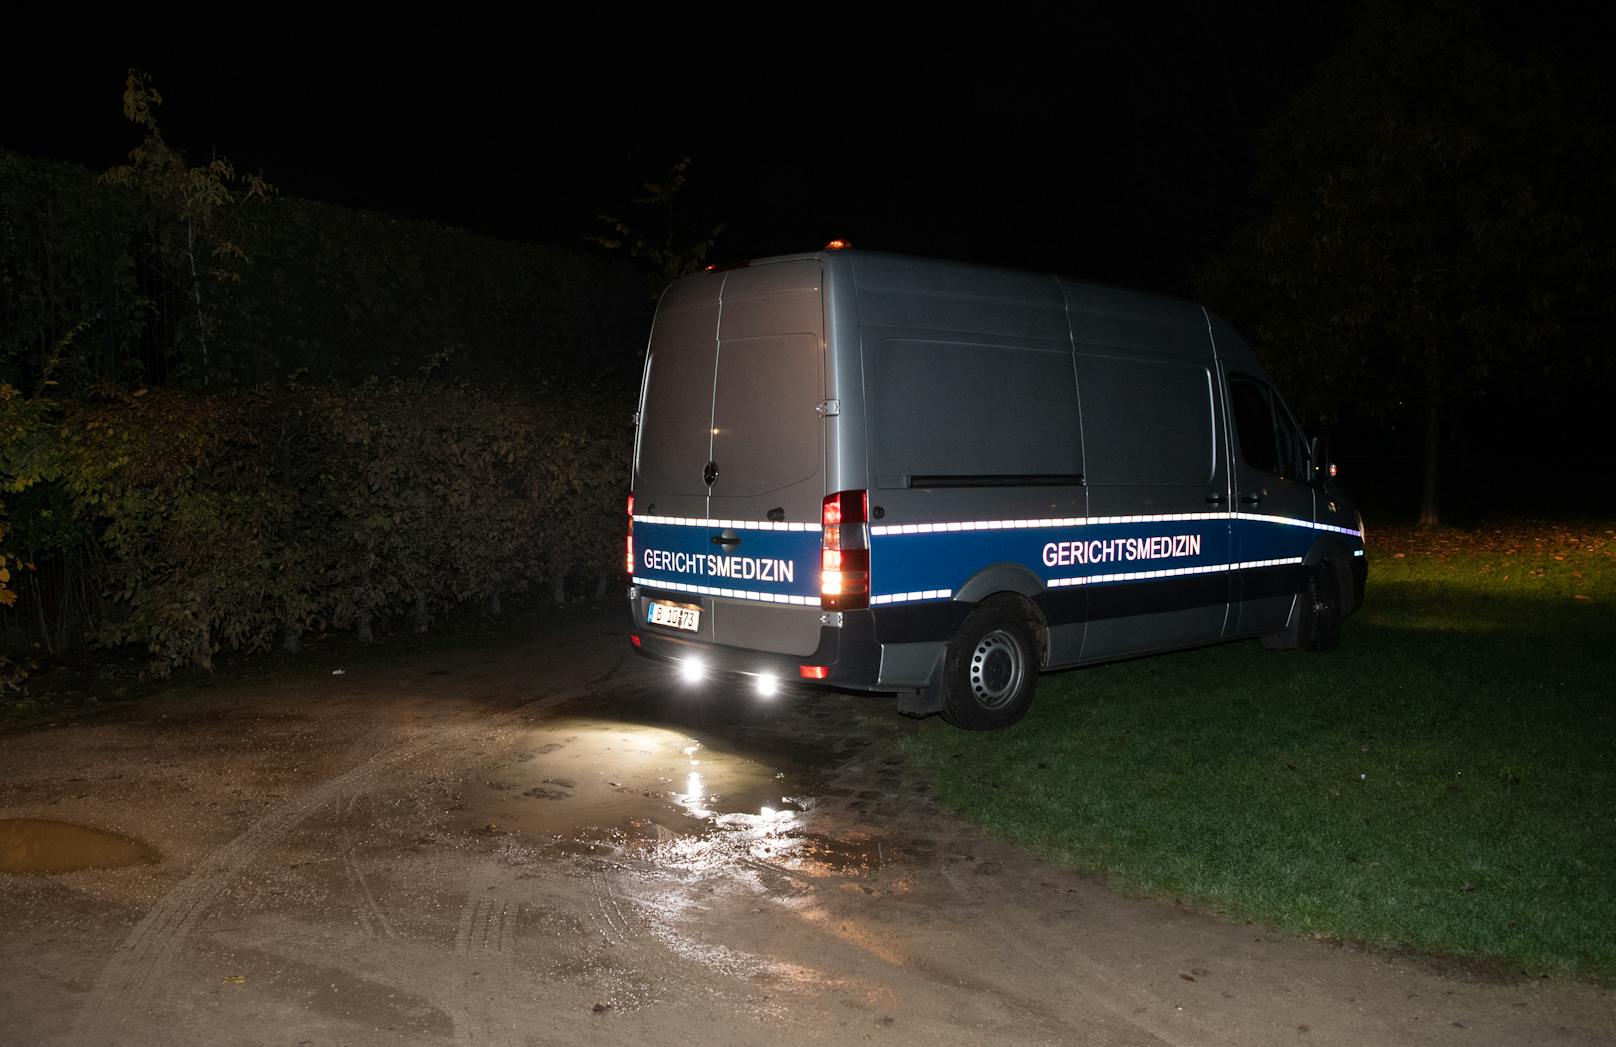 Blutige Halloween-Nacht in Berlin! Wie deutsche Medien berichten, kam es gegen 22.30 Uhr am Samstag im Monbijoupark zu einer Messerstecherei. Ein erst 13-jähriger Bursche wurde verwundet und erlag noch am Tatort seinen Verletzungen. Polizei und Sanitäter versuchten noch, ihn zu retten – aber es war zu spät.